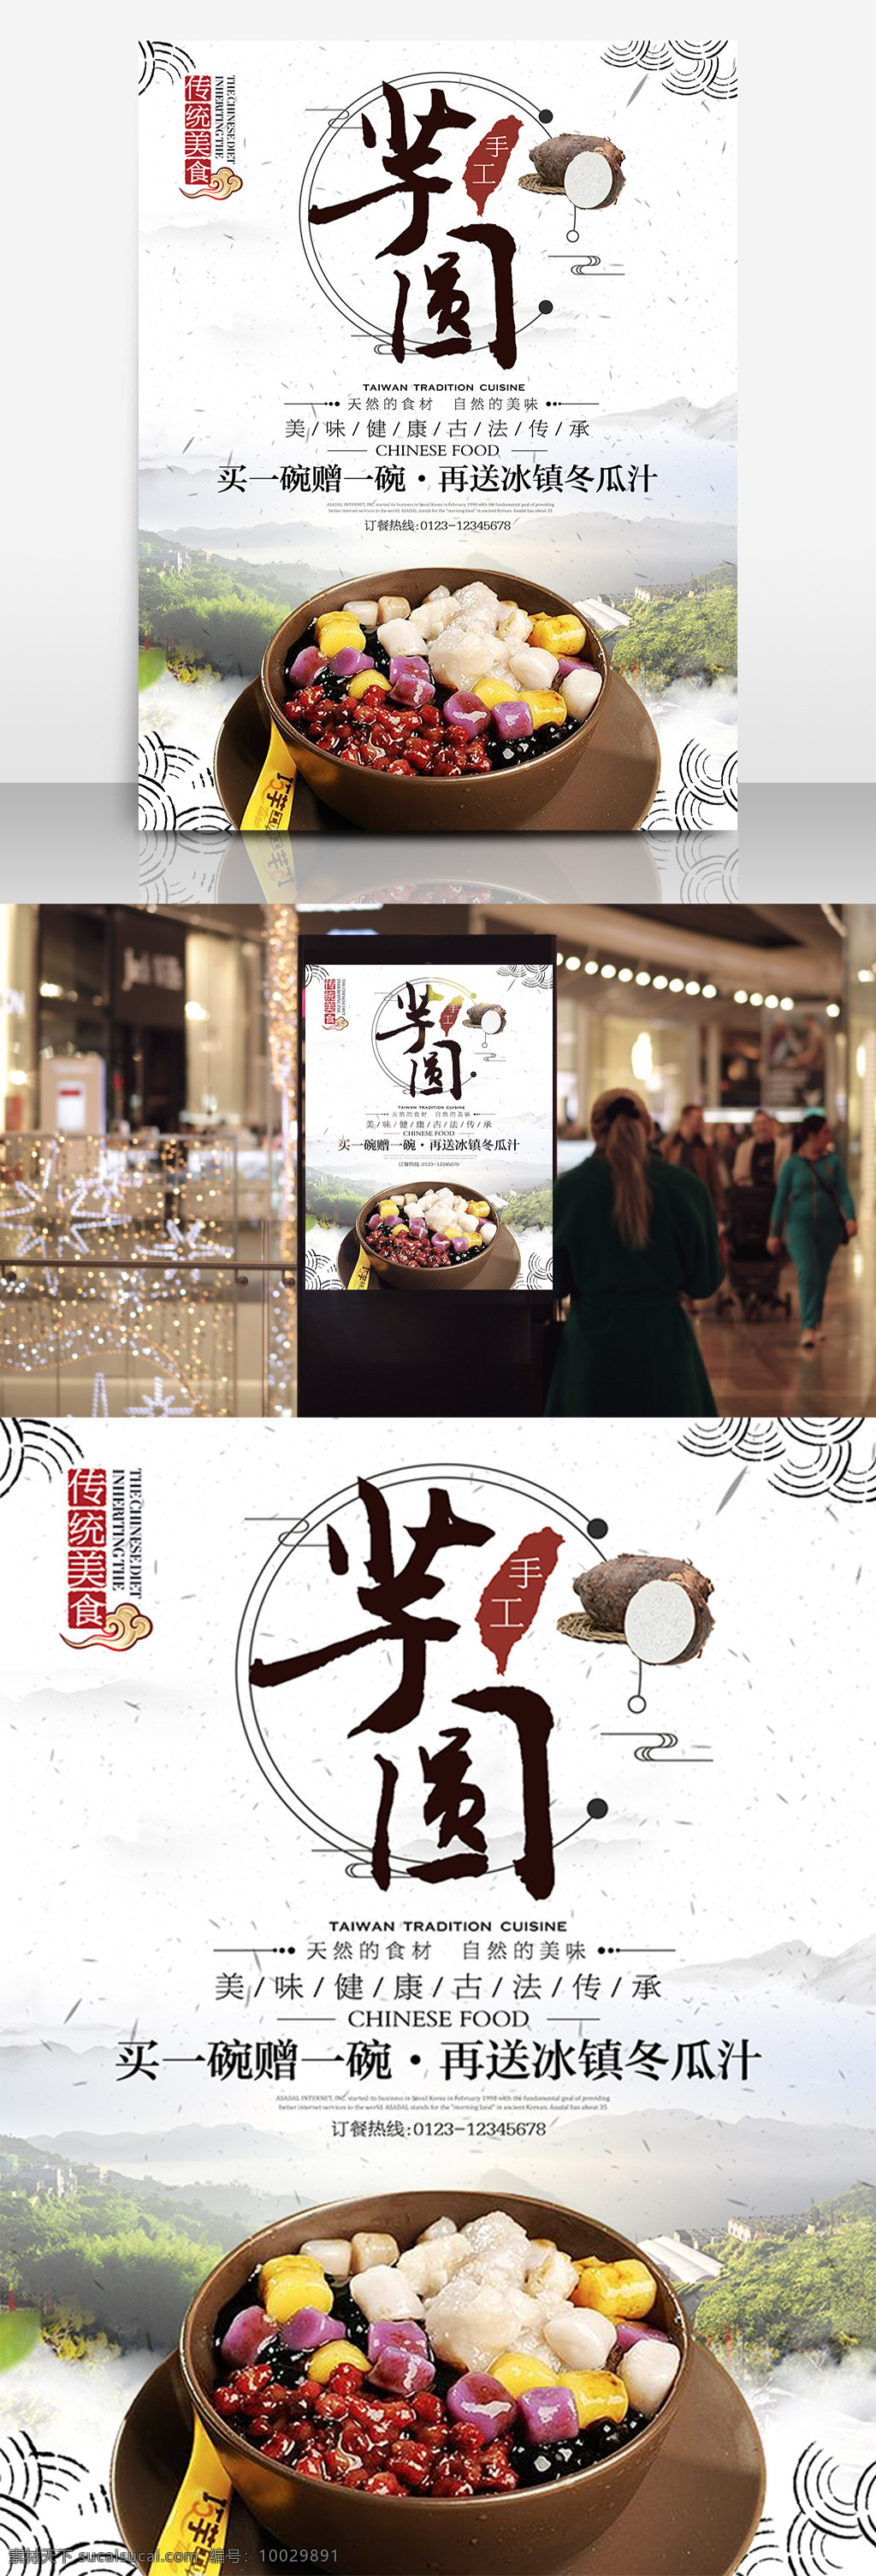 台湾 小吃 芋 圆 美食 促销 海报 台湾美食 芋圆 芋头 展板 买赠 中国风